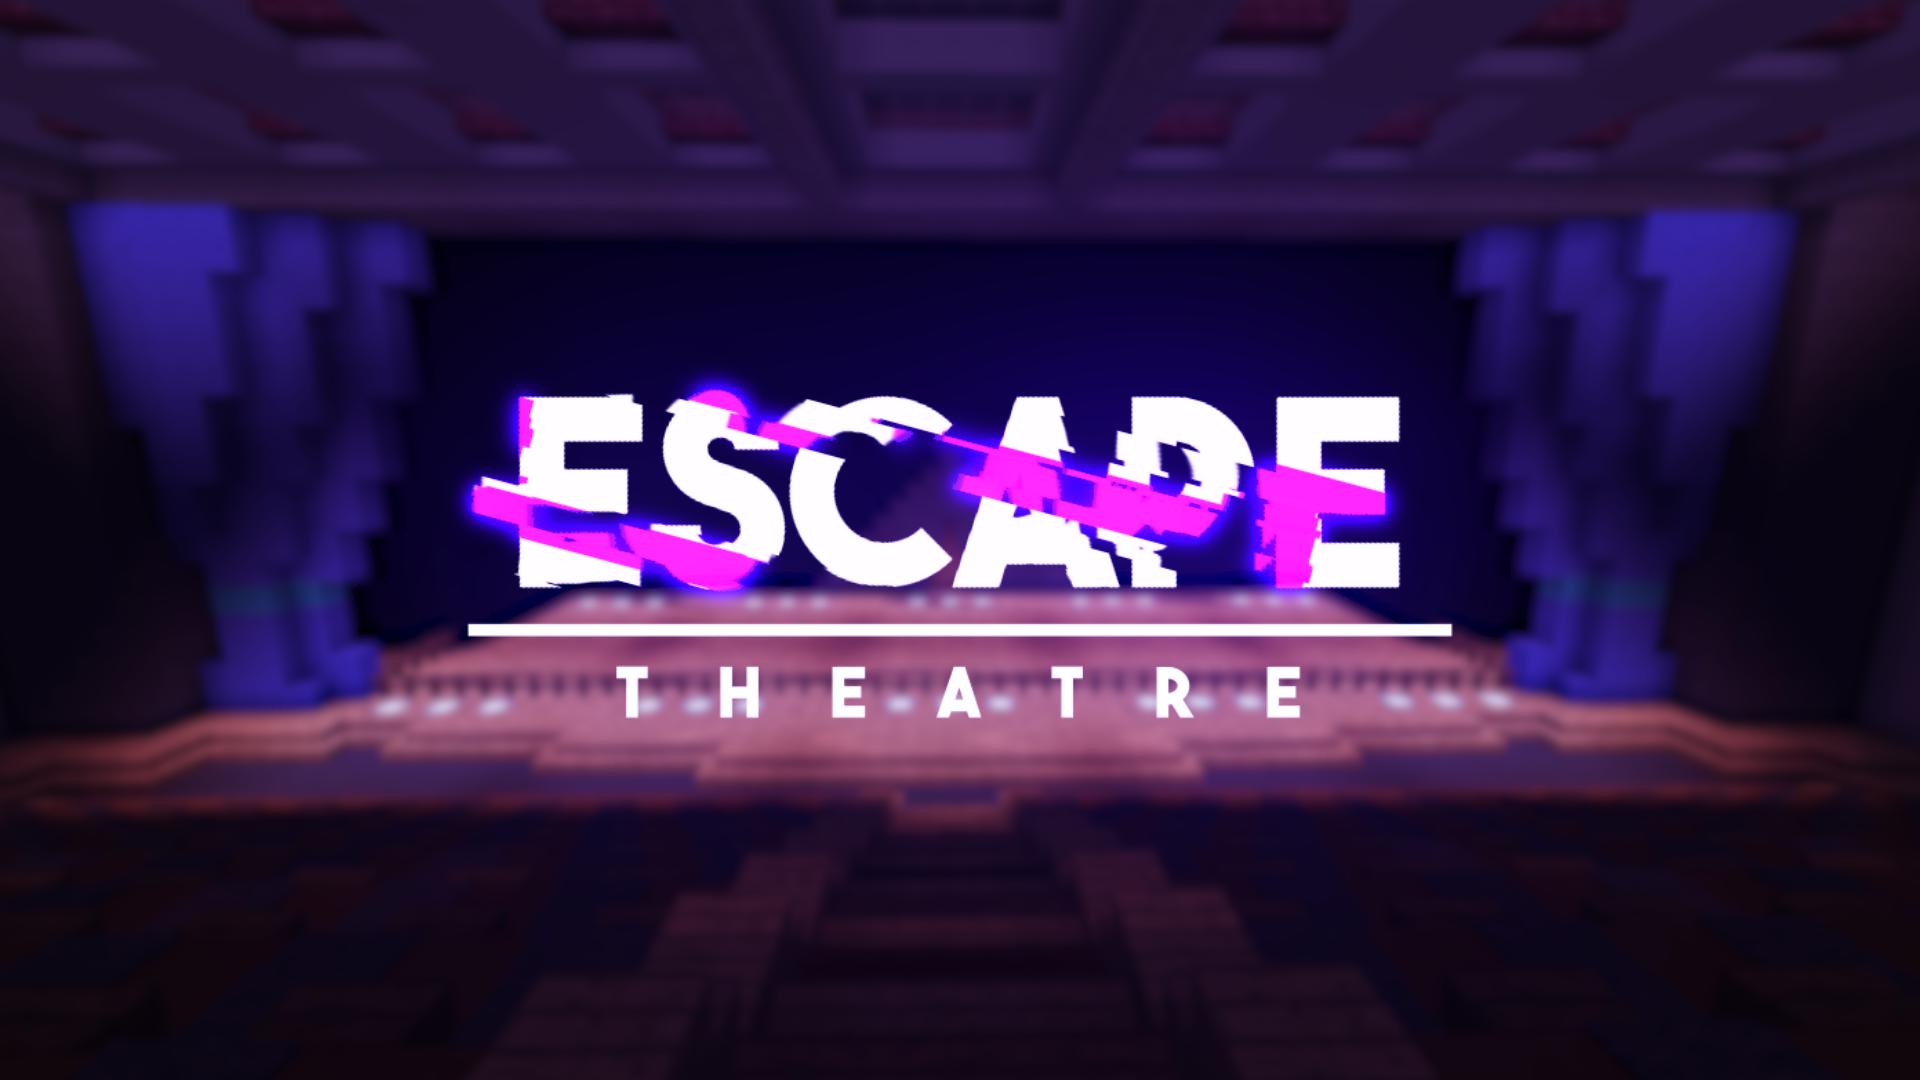 Escape: Theatre